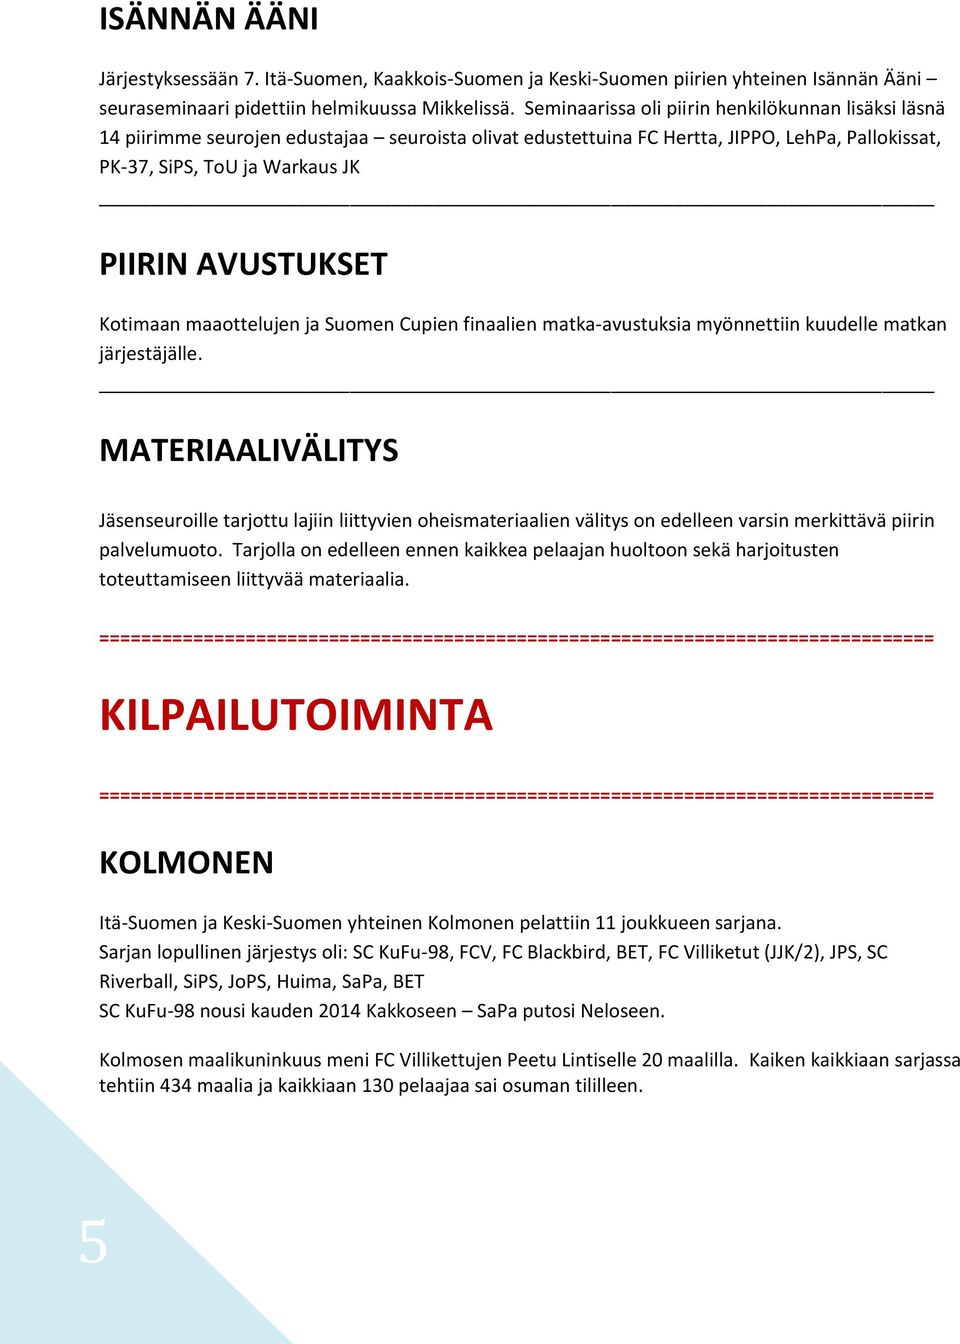 Kotimaan maaottelujen ja Suomen Cupien finaalien matka-avustuksia myönnettiin kuudelle matkan järjestäjälle.